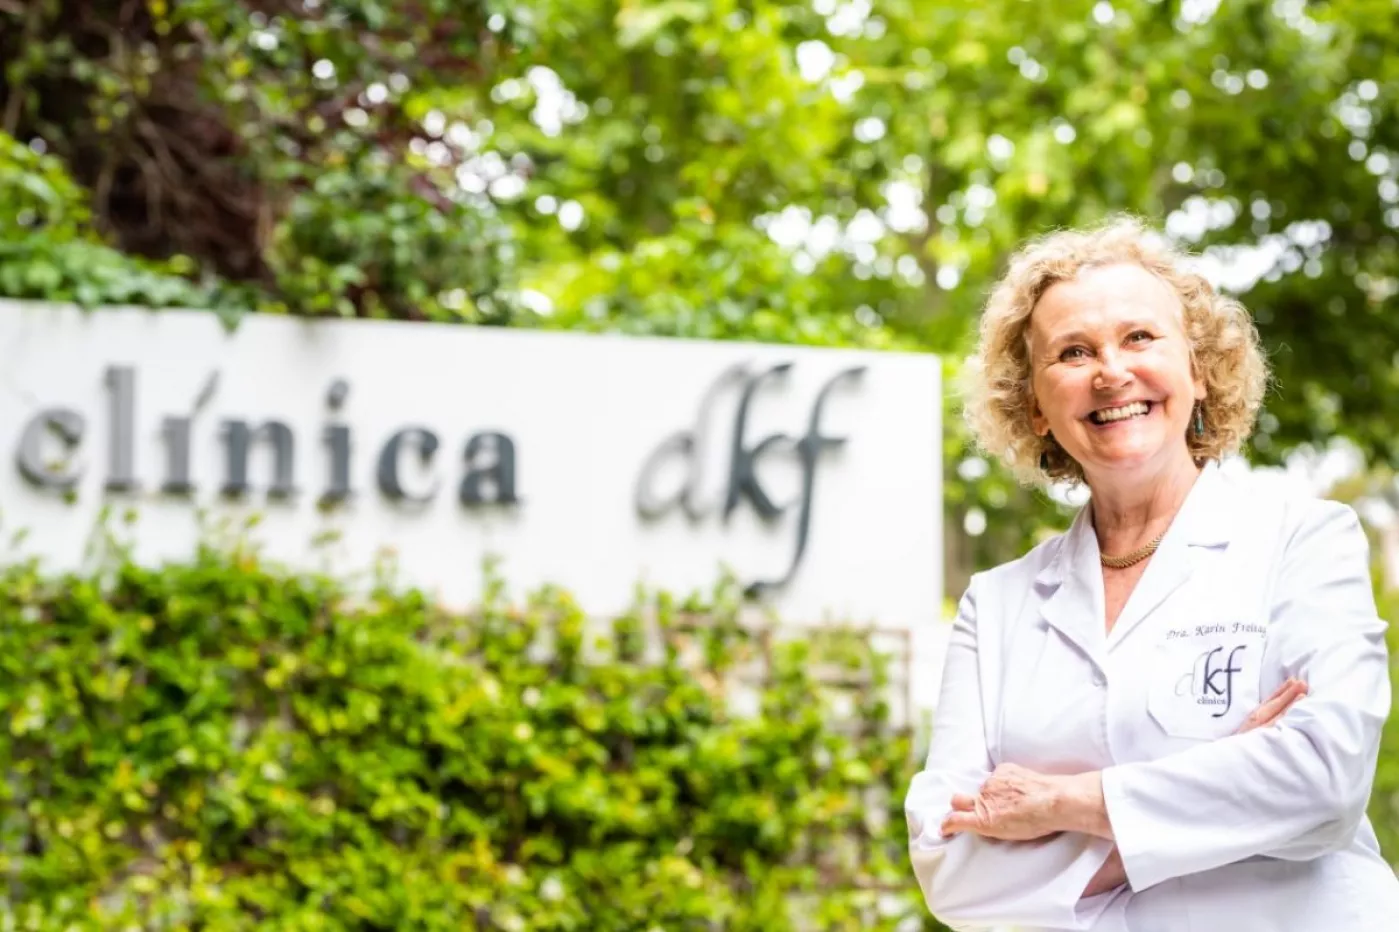 Karin Freitag, directora de la Clínica DKF, es pionera en España en este tipo de tratamiento. FOTO: DKF. 